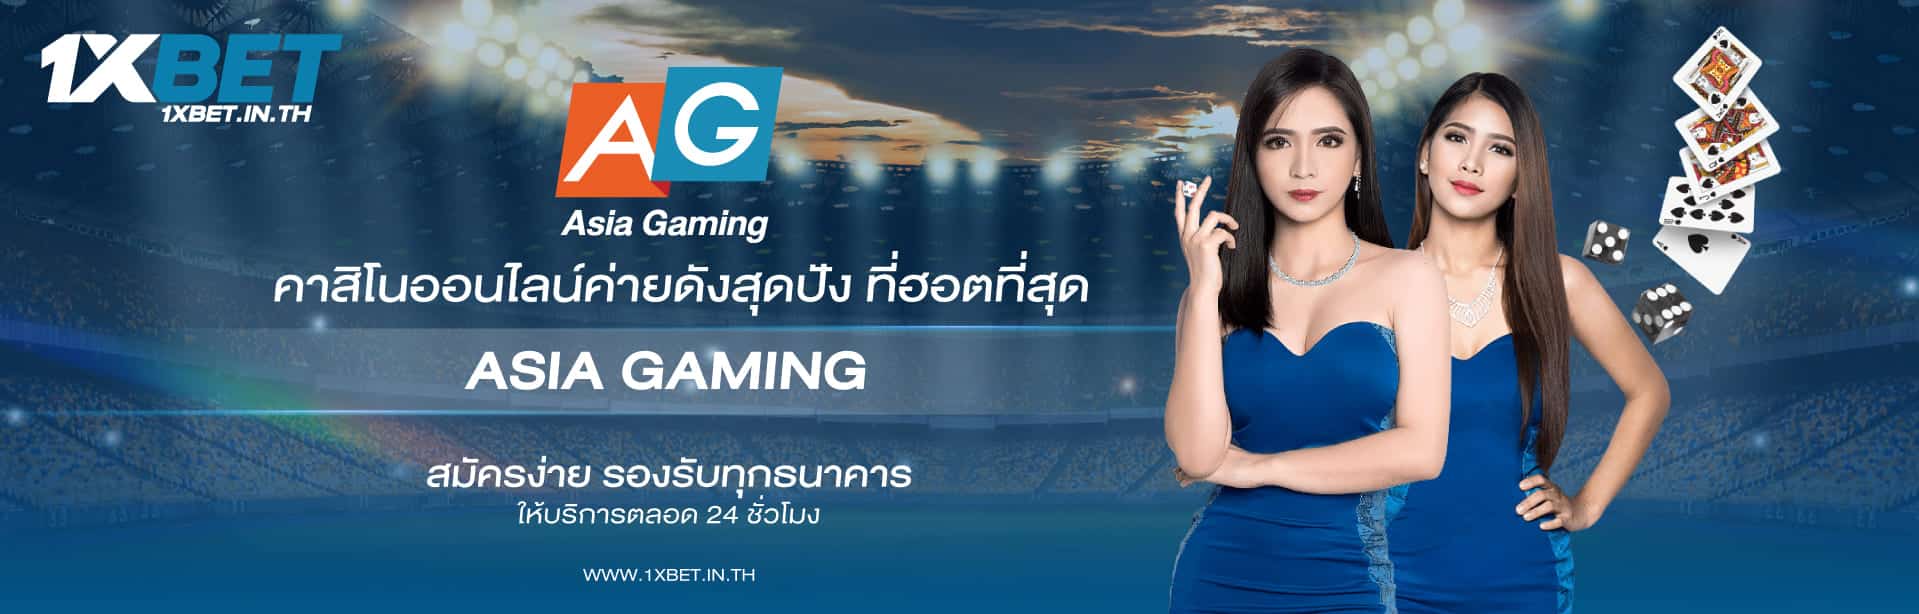 Asia Gaming pc